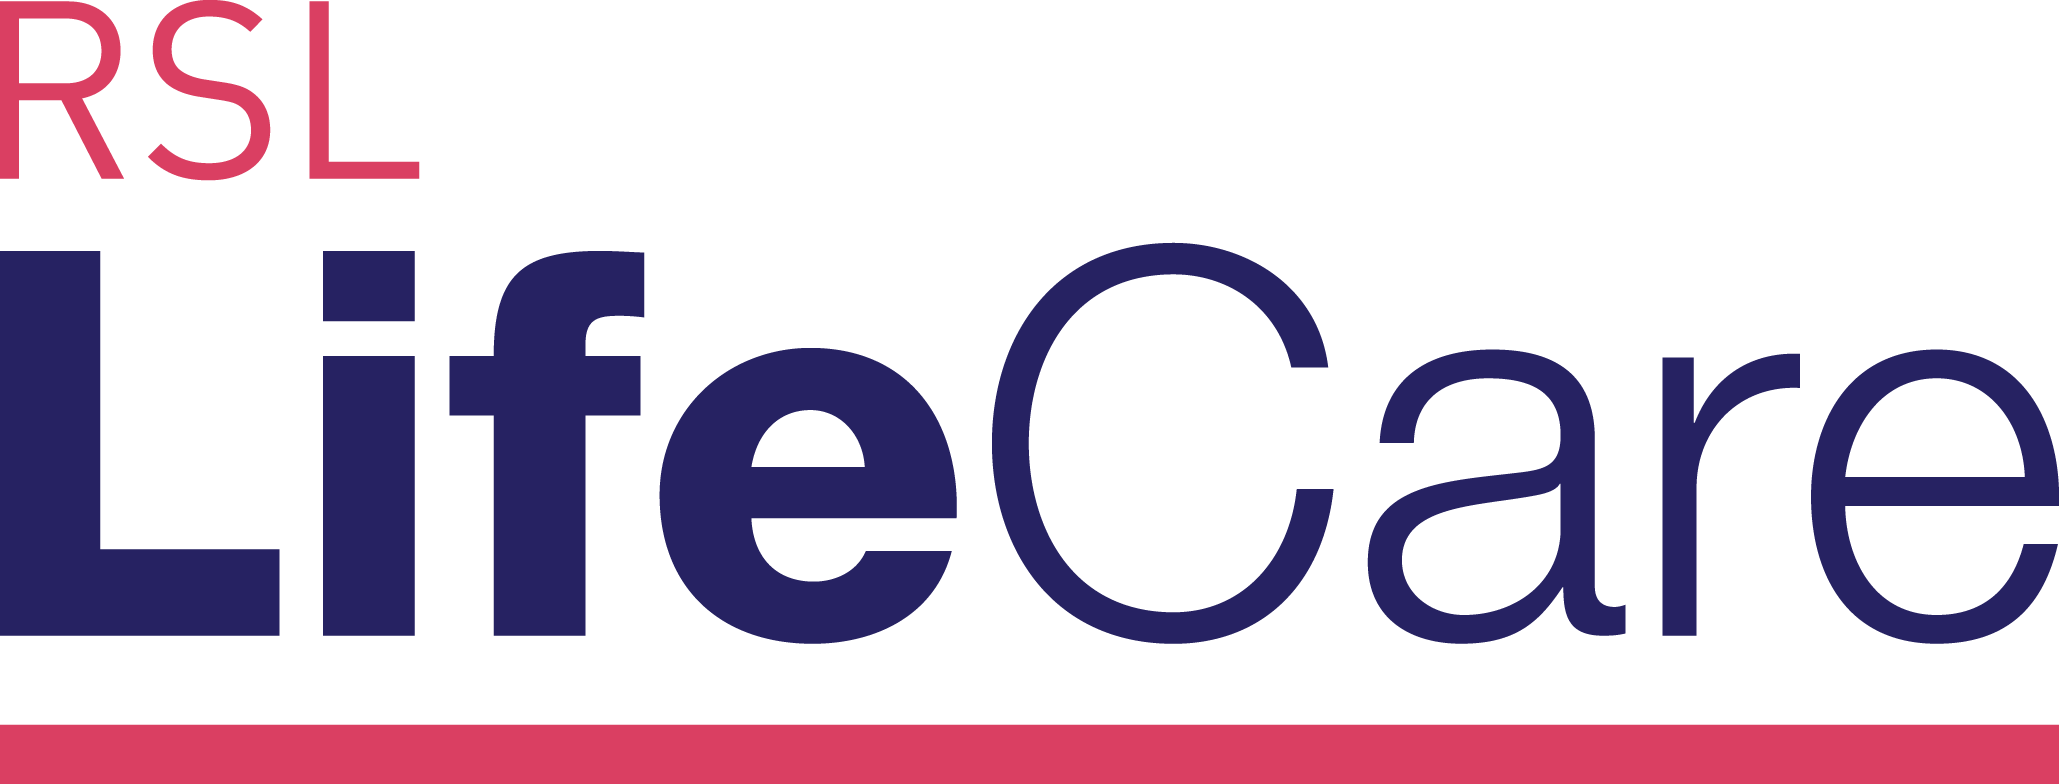 RSL LifeCare Pozieres Retirement Village logo